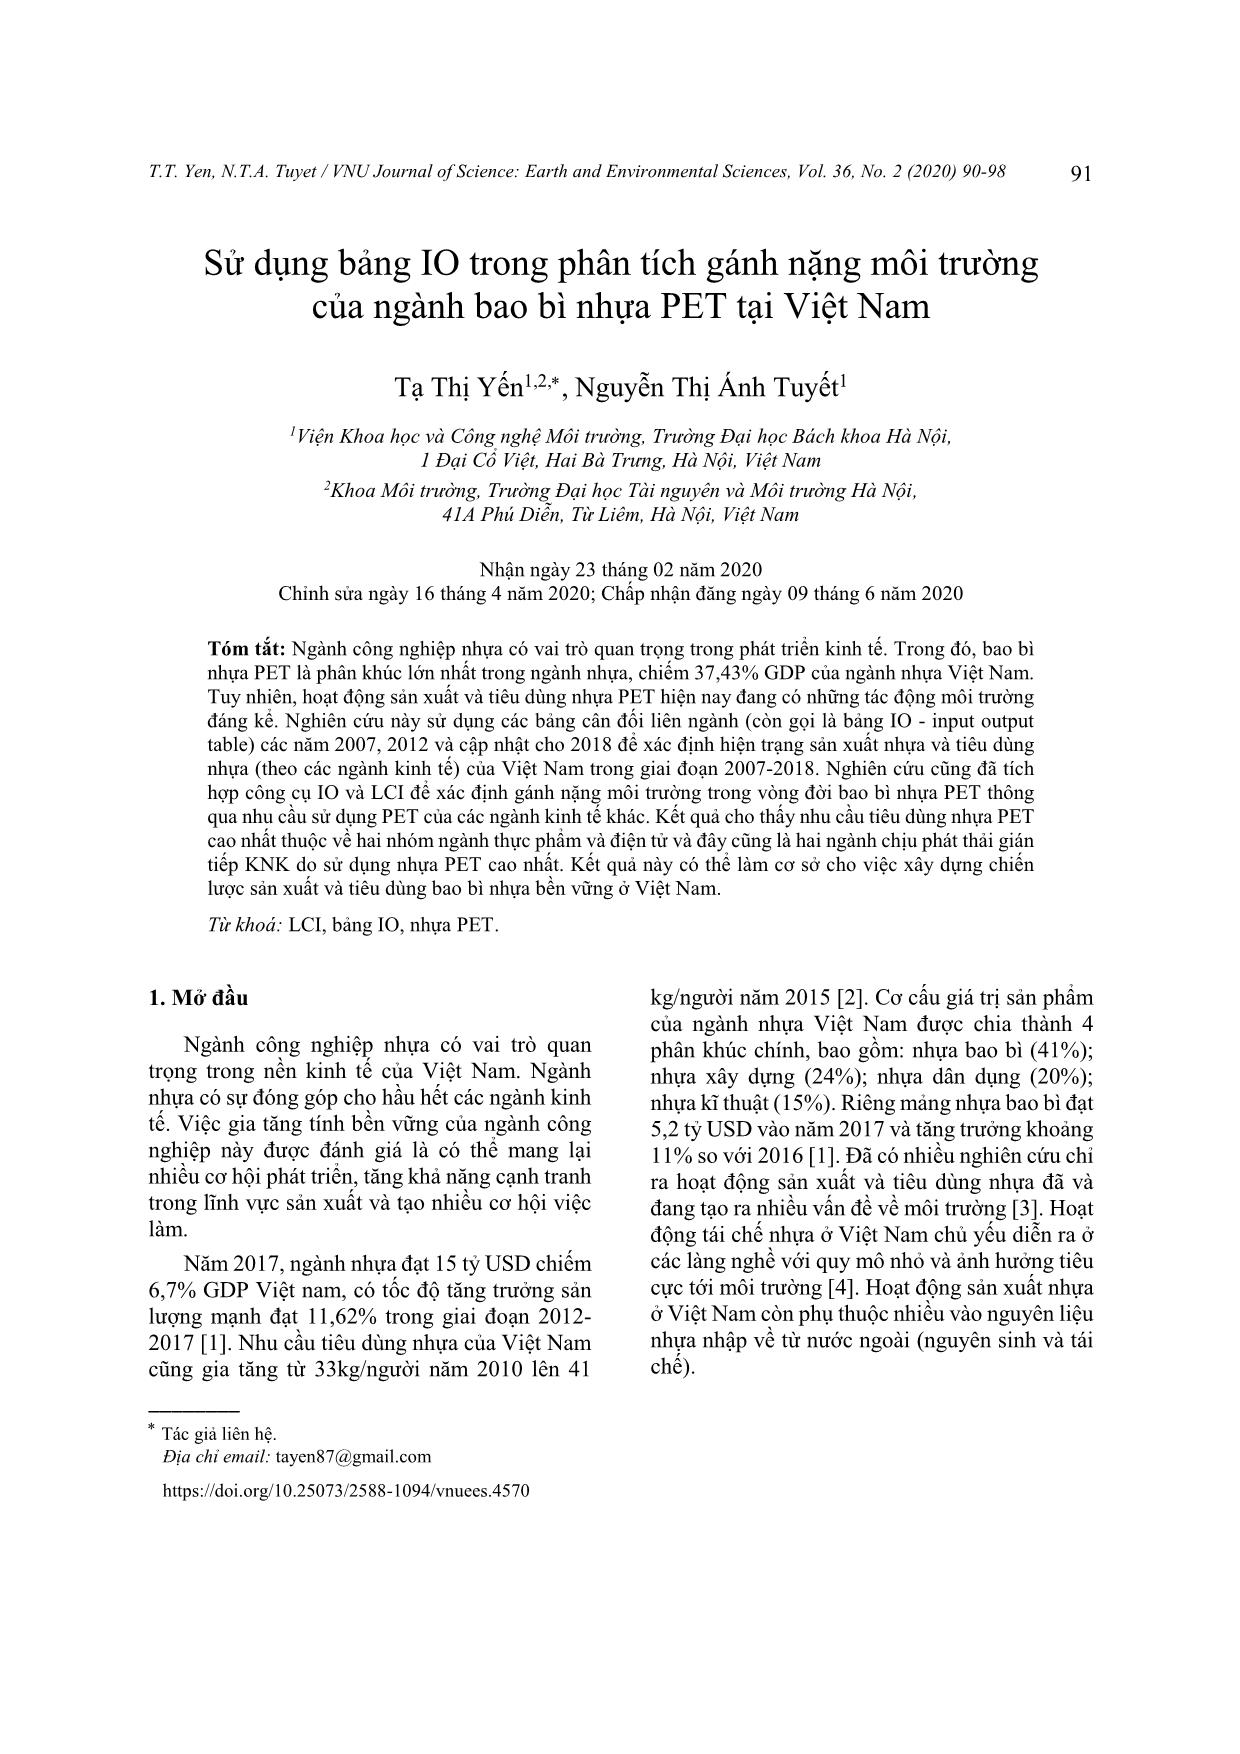 Sử dụng bảng IO trong phân tích gánh nặng môi trường của ngành bao bì nhựa PET tại Việt Nam trang 2